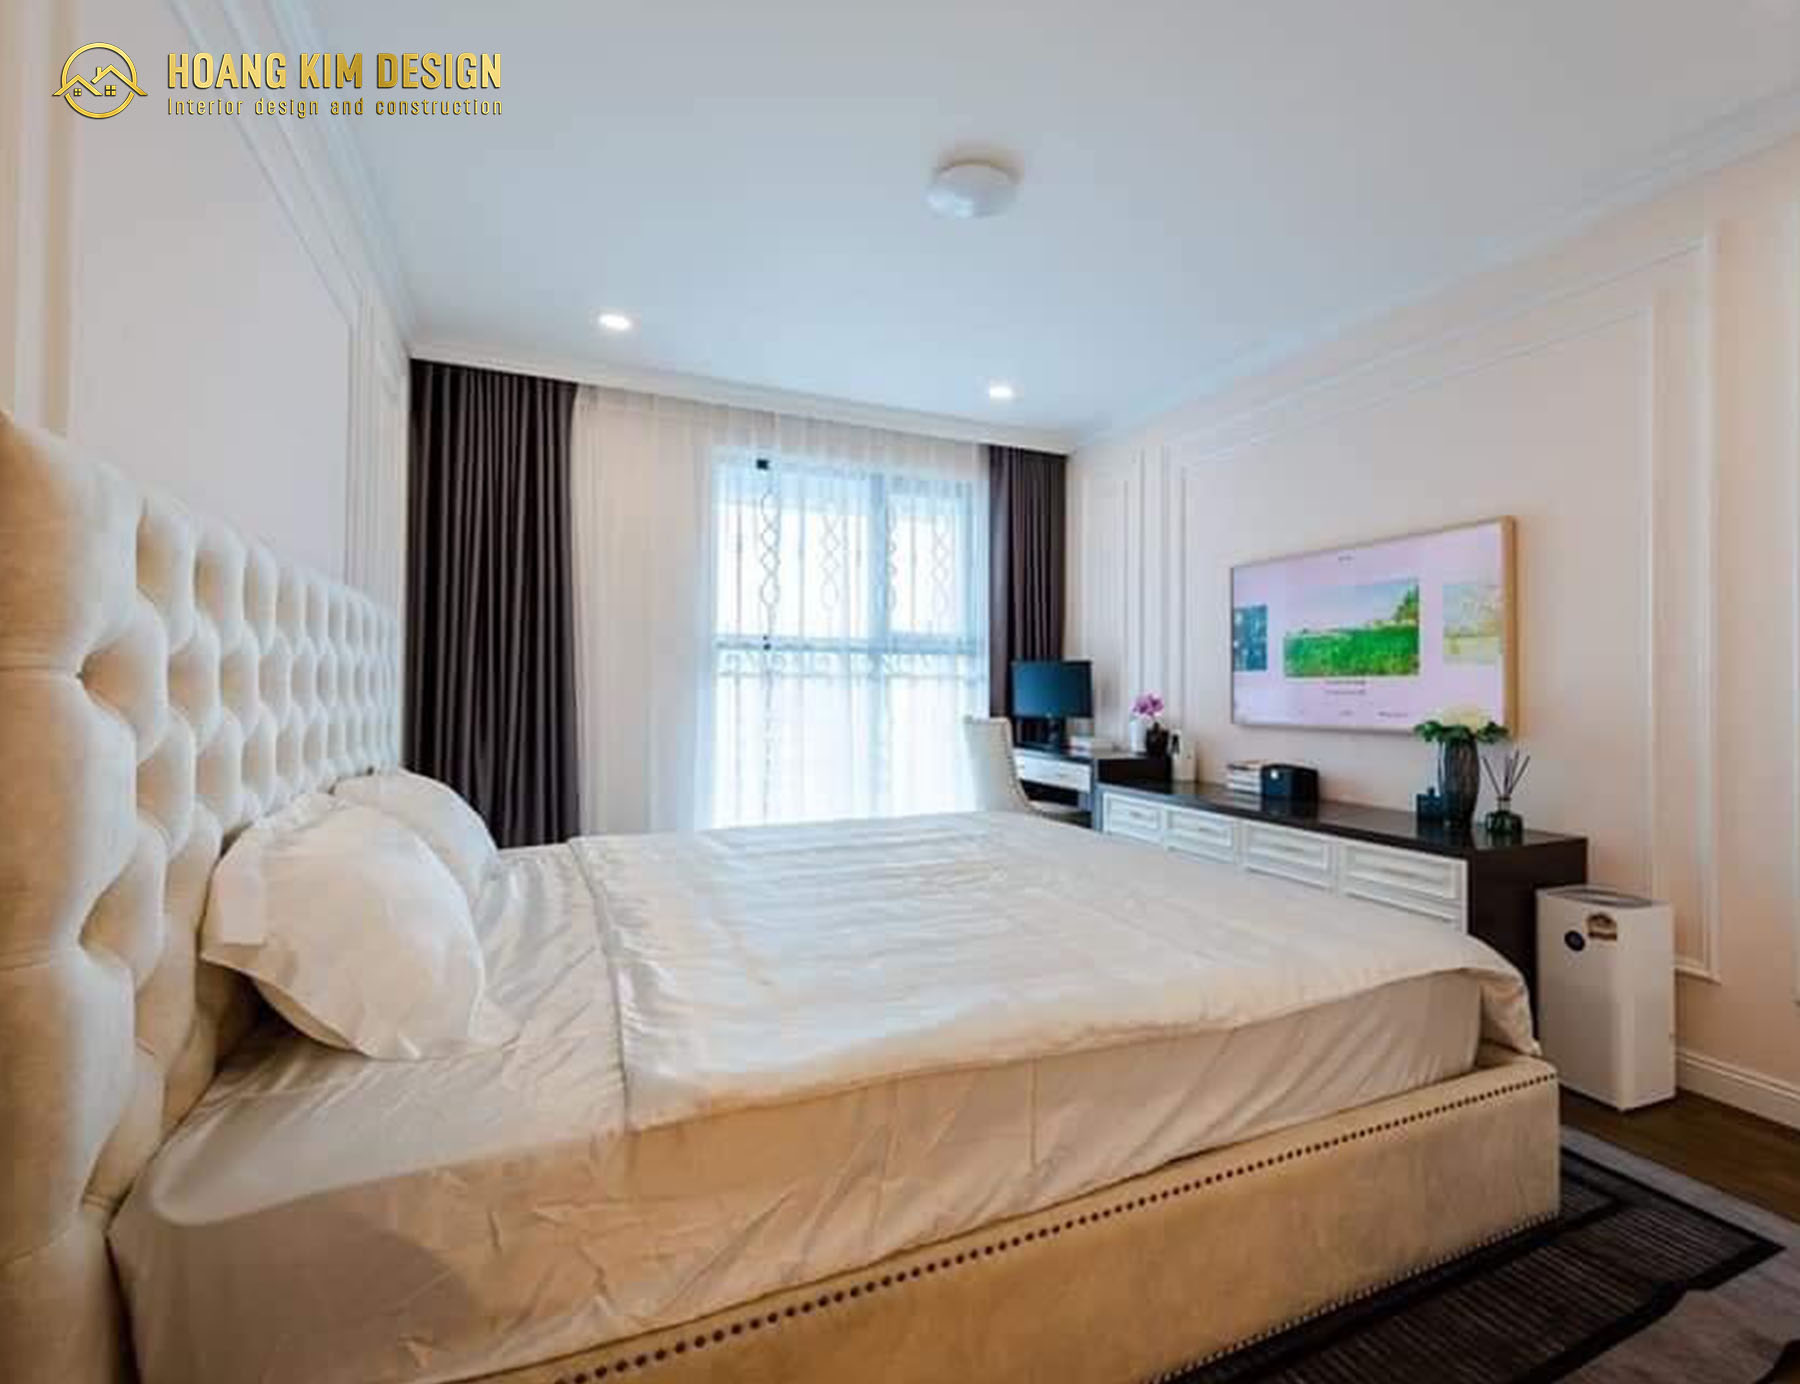 Phòng ngủ lớn được thiết kế tận dụng tối ưu diện tích